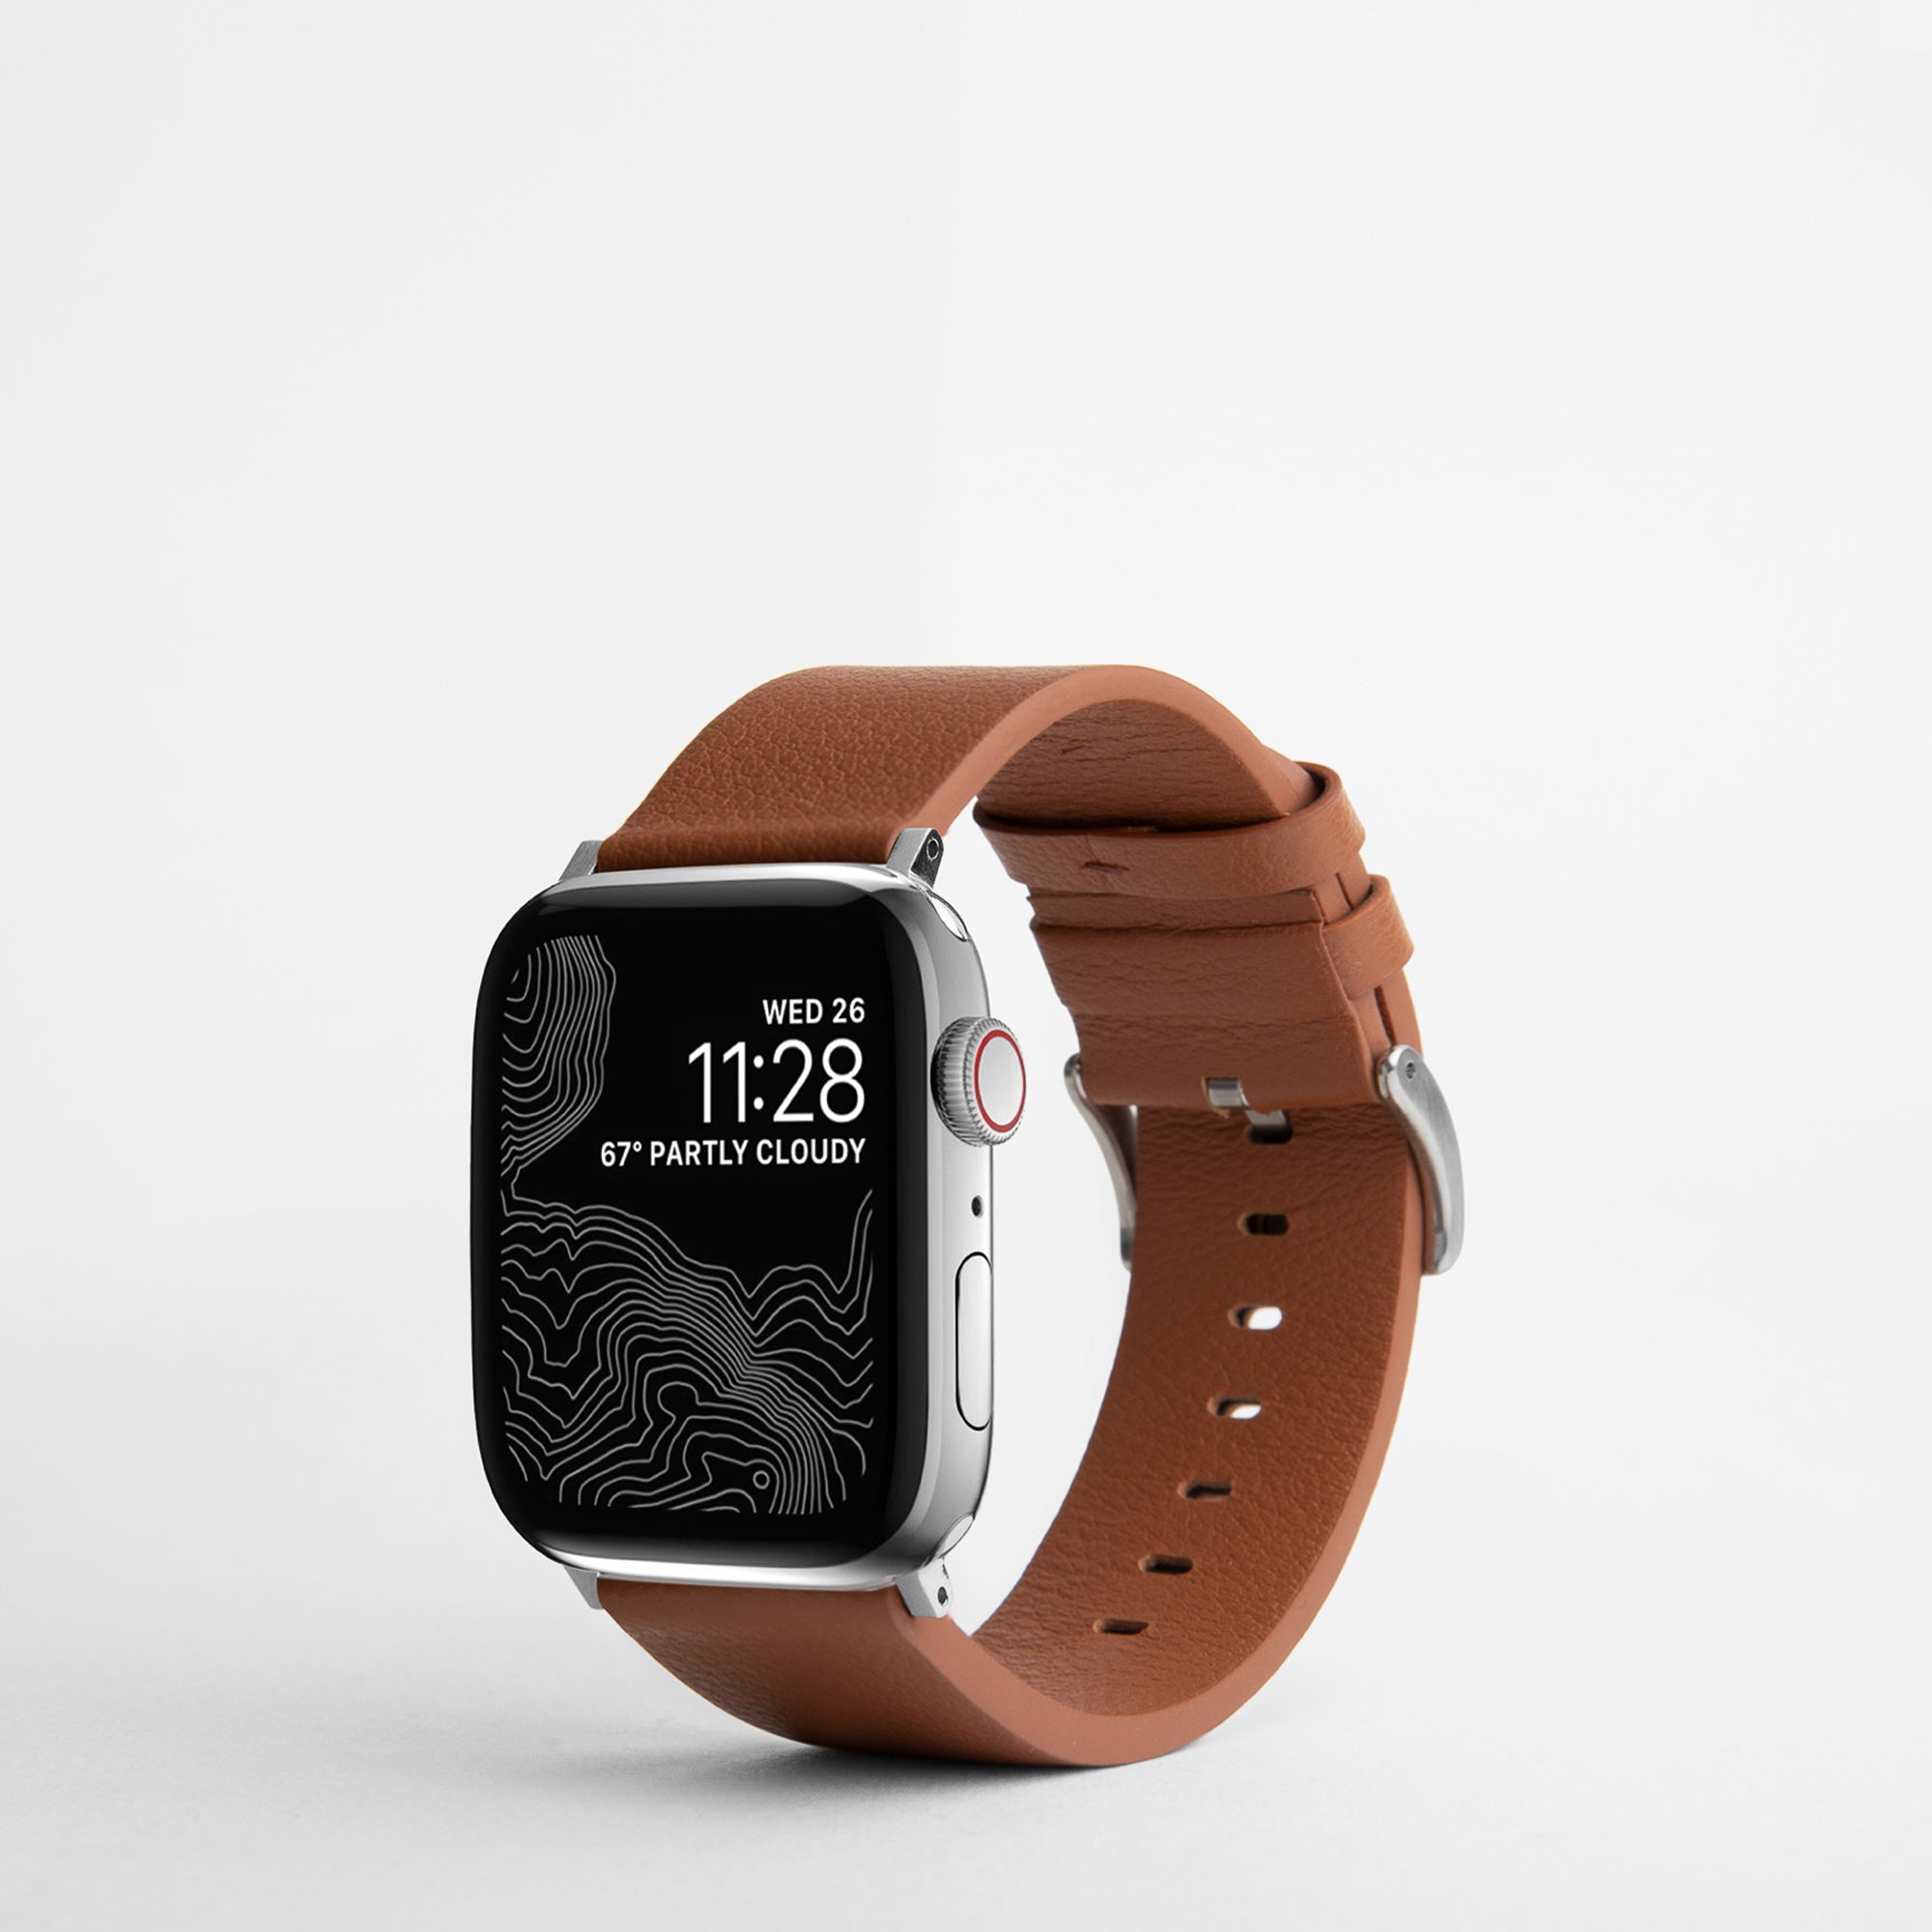 Todas las nuevas fundas para iPhone 11 y correas para Apple Watch